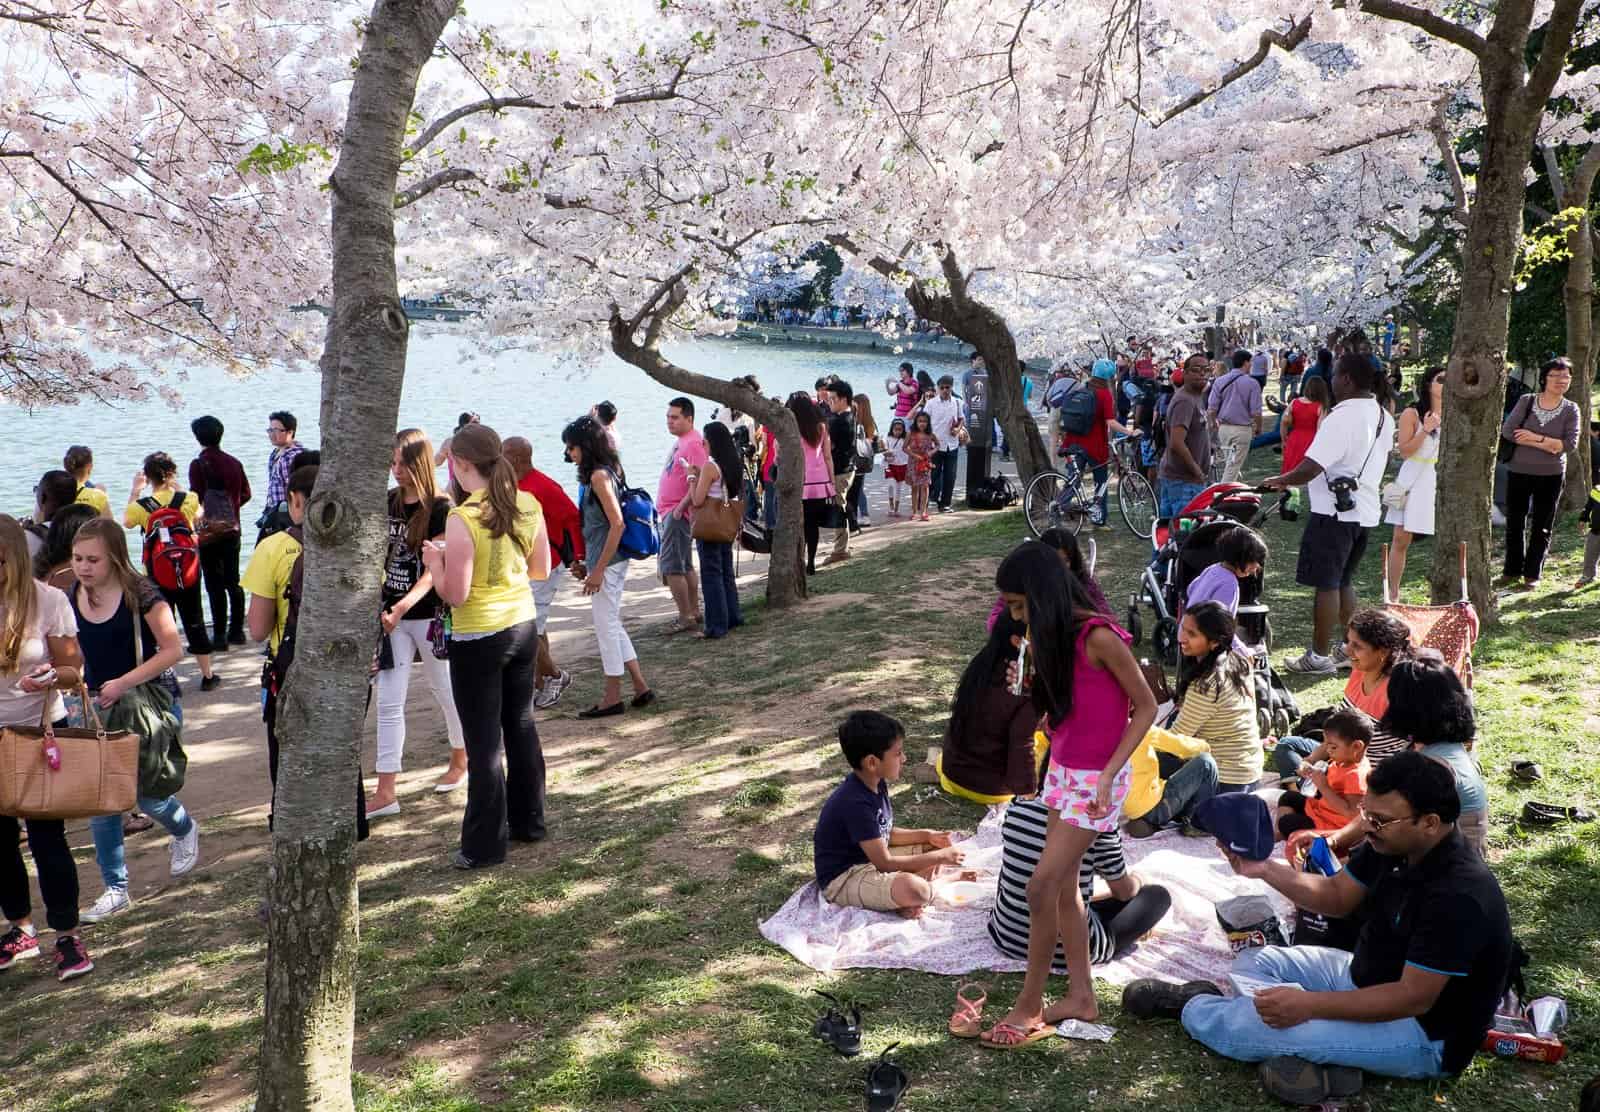 Mark your calendars! The National Cherry Blossom Festival Parade